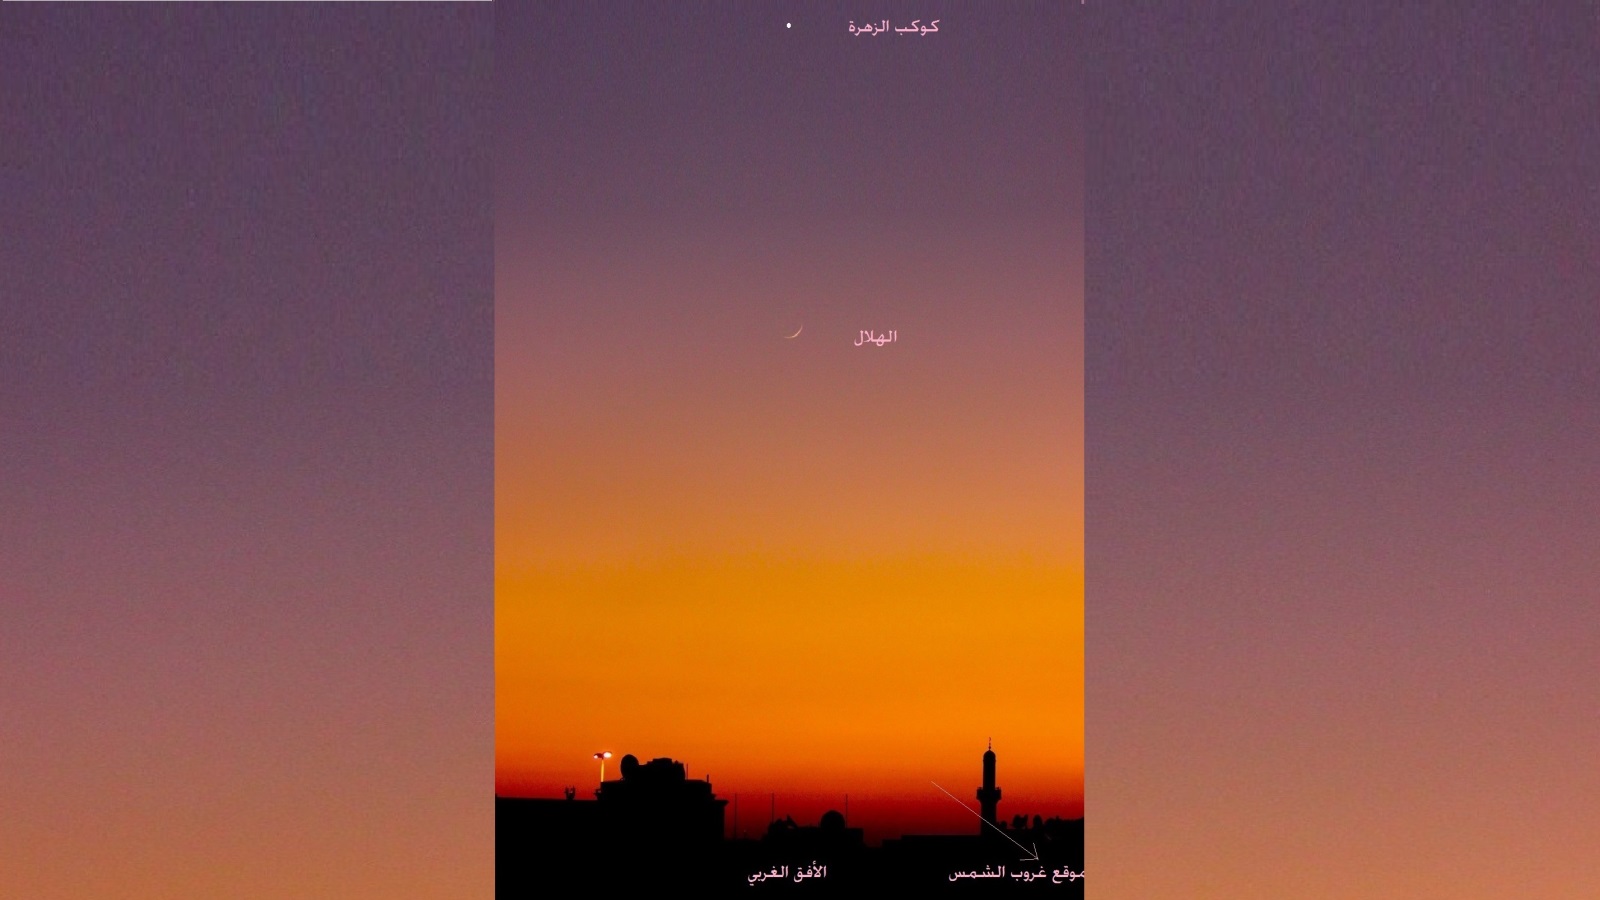 ‪هلال شهر رمضان سيظهر الأربعاء 16 مايو/أيار بعيد خروج الشمس إلى اليسار قليلا عن موضع غروبها، وسيسطع فوقه كوكب الزهرة‬ (الفلكي على الحجري/الجزيرة)